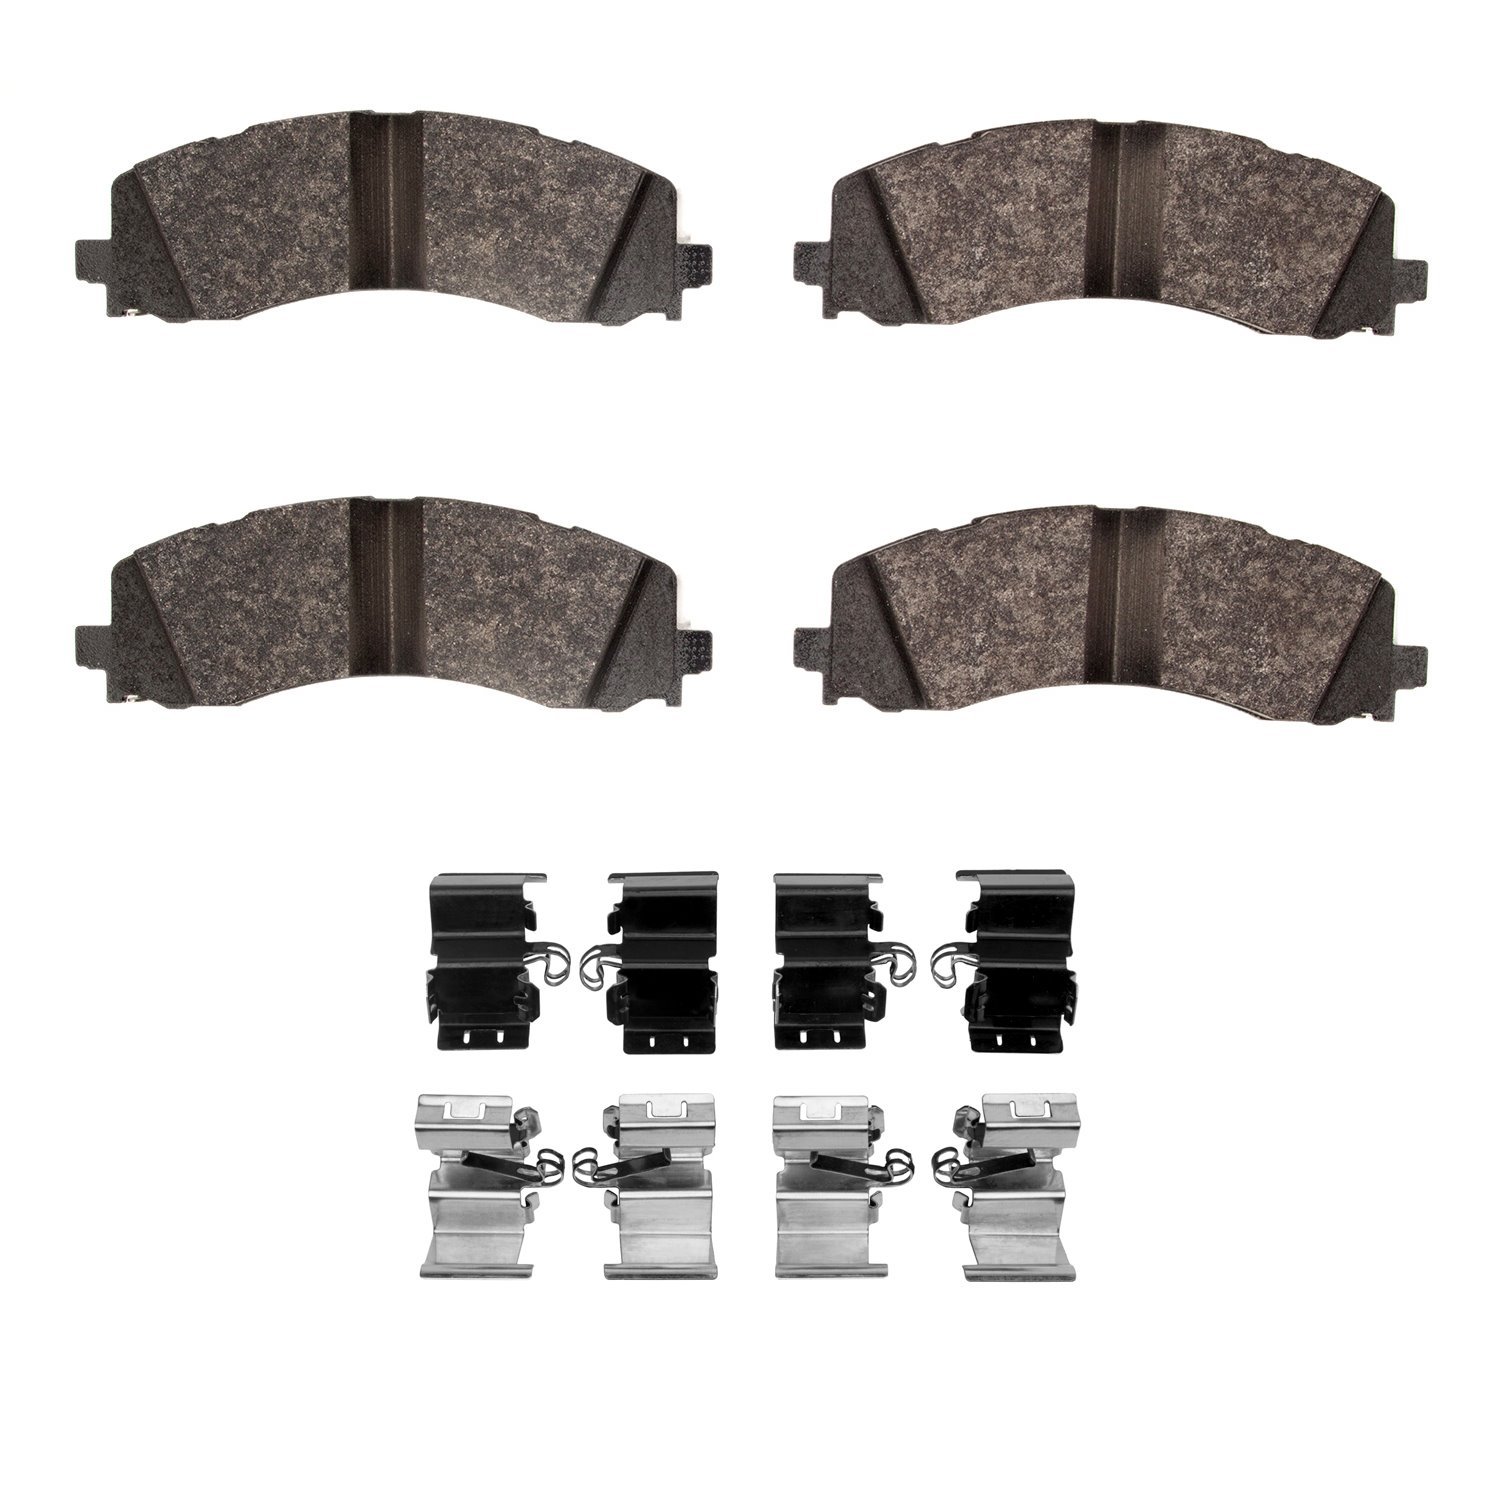 1214-2225-01 Heavy-Duty Brake Pads & Hardware Kit, Fits Select Mopar, Position: Rear